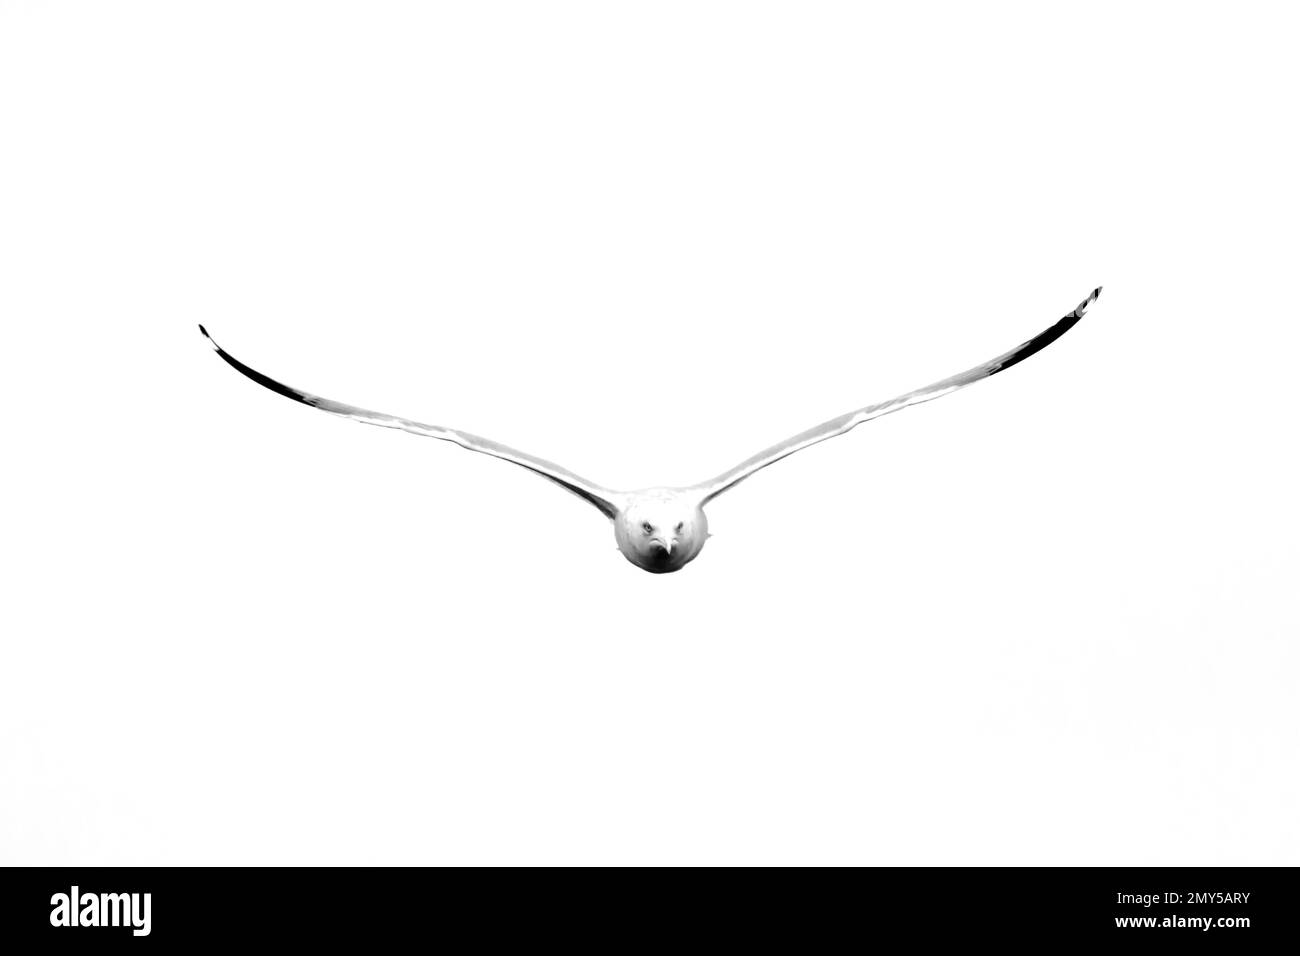 Fotografia in bianco e nero di un gabbiano a forma di anello, Larus delawarensis, in volo guardando la macchina fotografica. Portato a Davenport, Iowa in una giornata invernale. Foto Stock